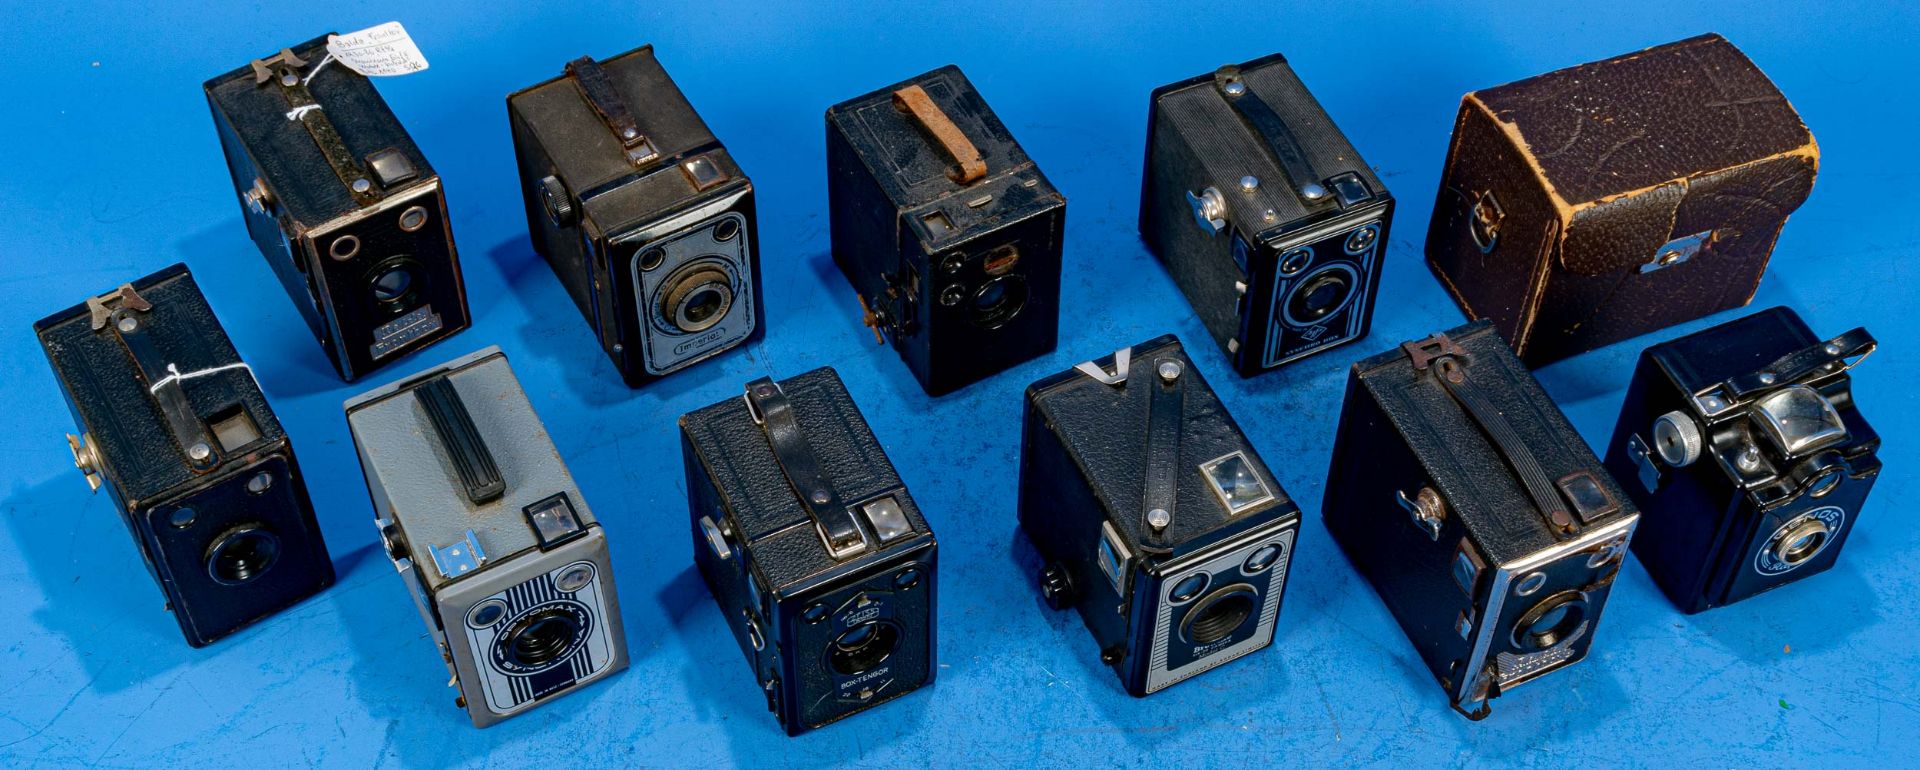 10teiliges Konvolut versch. Photokameras. Versch. Alter, Größen, Hersteller, Wertigkeit und Erhalt.